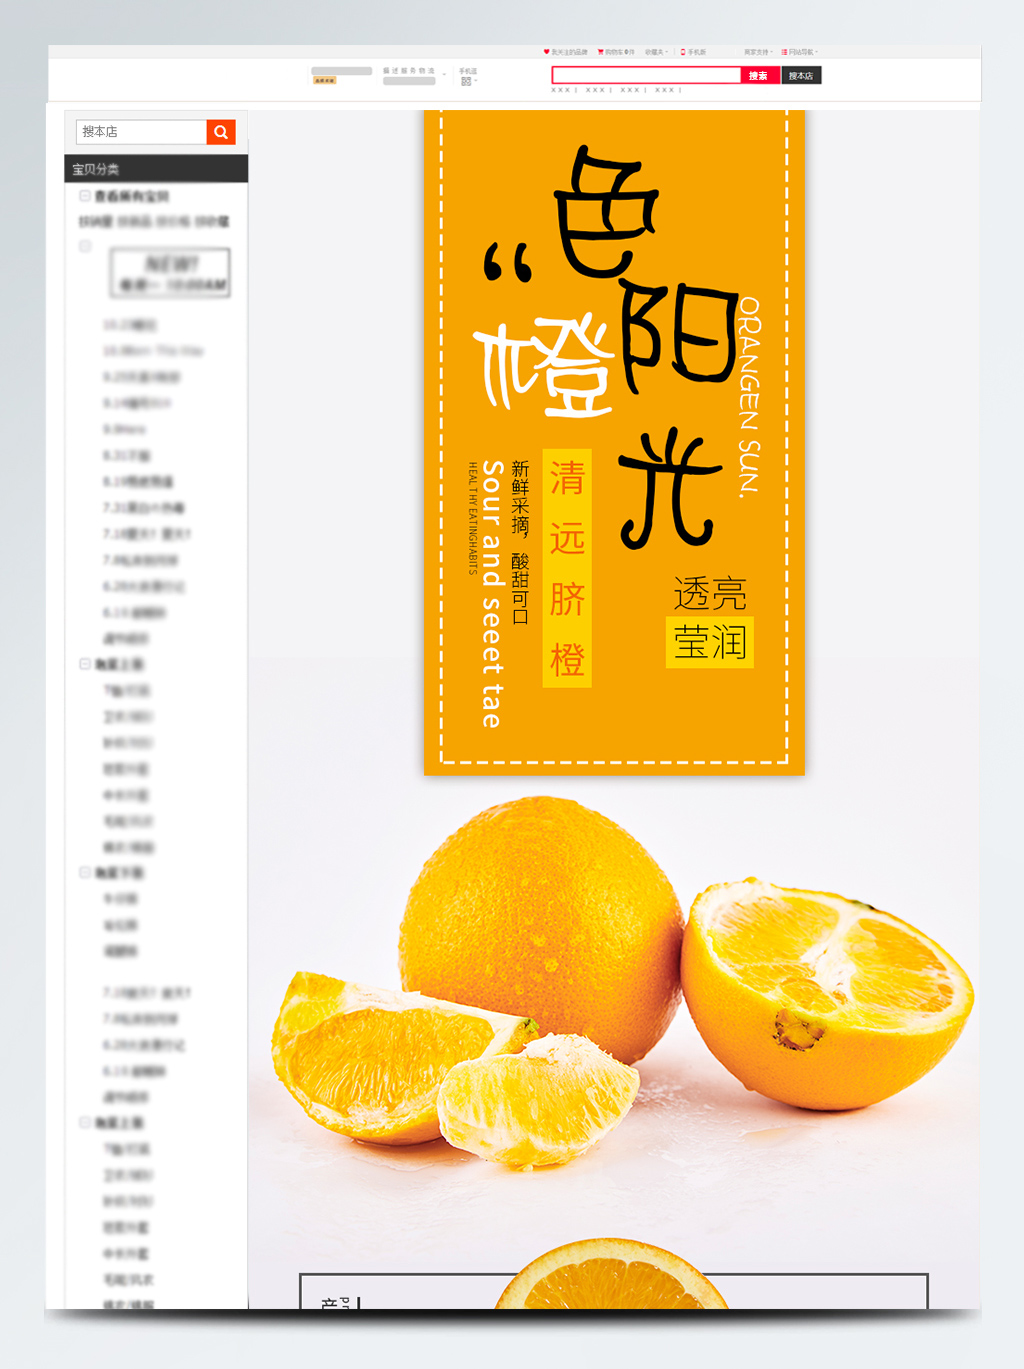 脐橙简约小清新详情模版-xq015